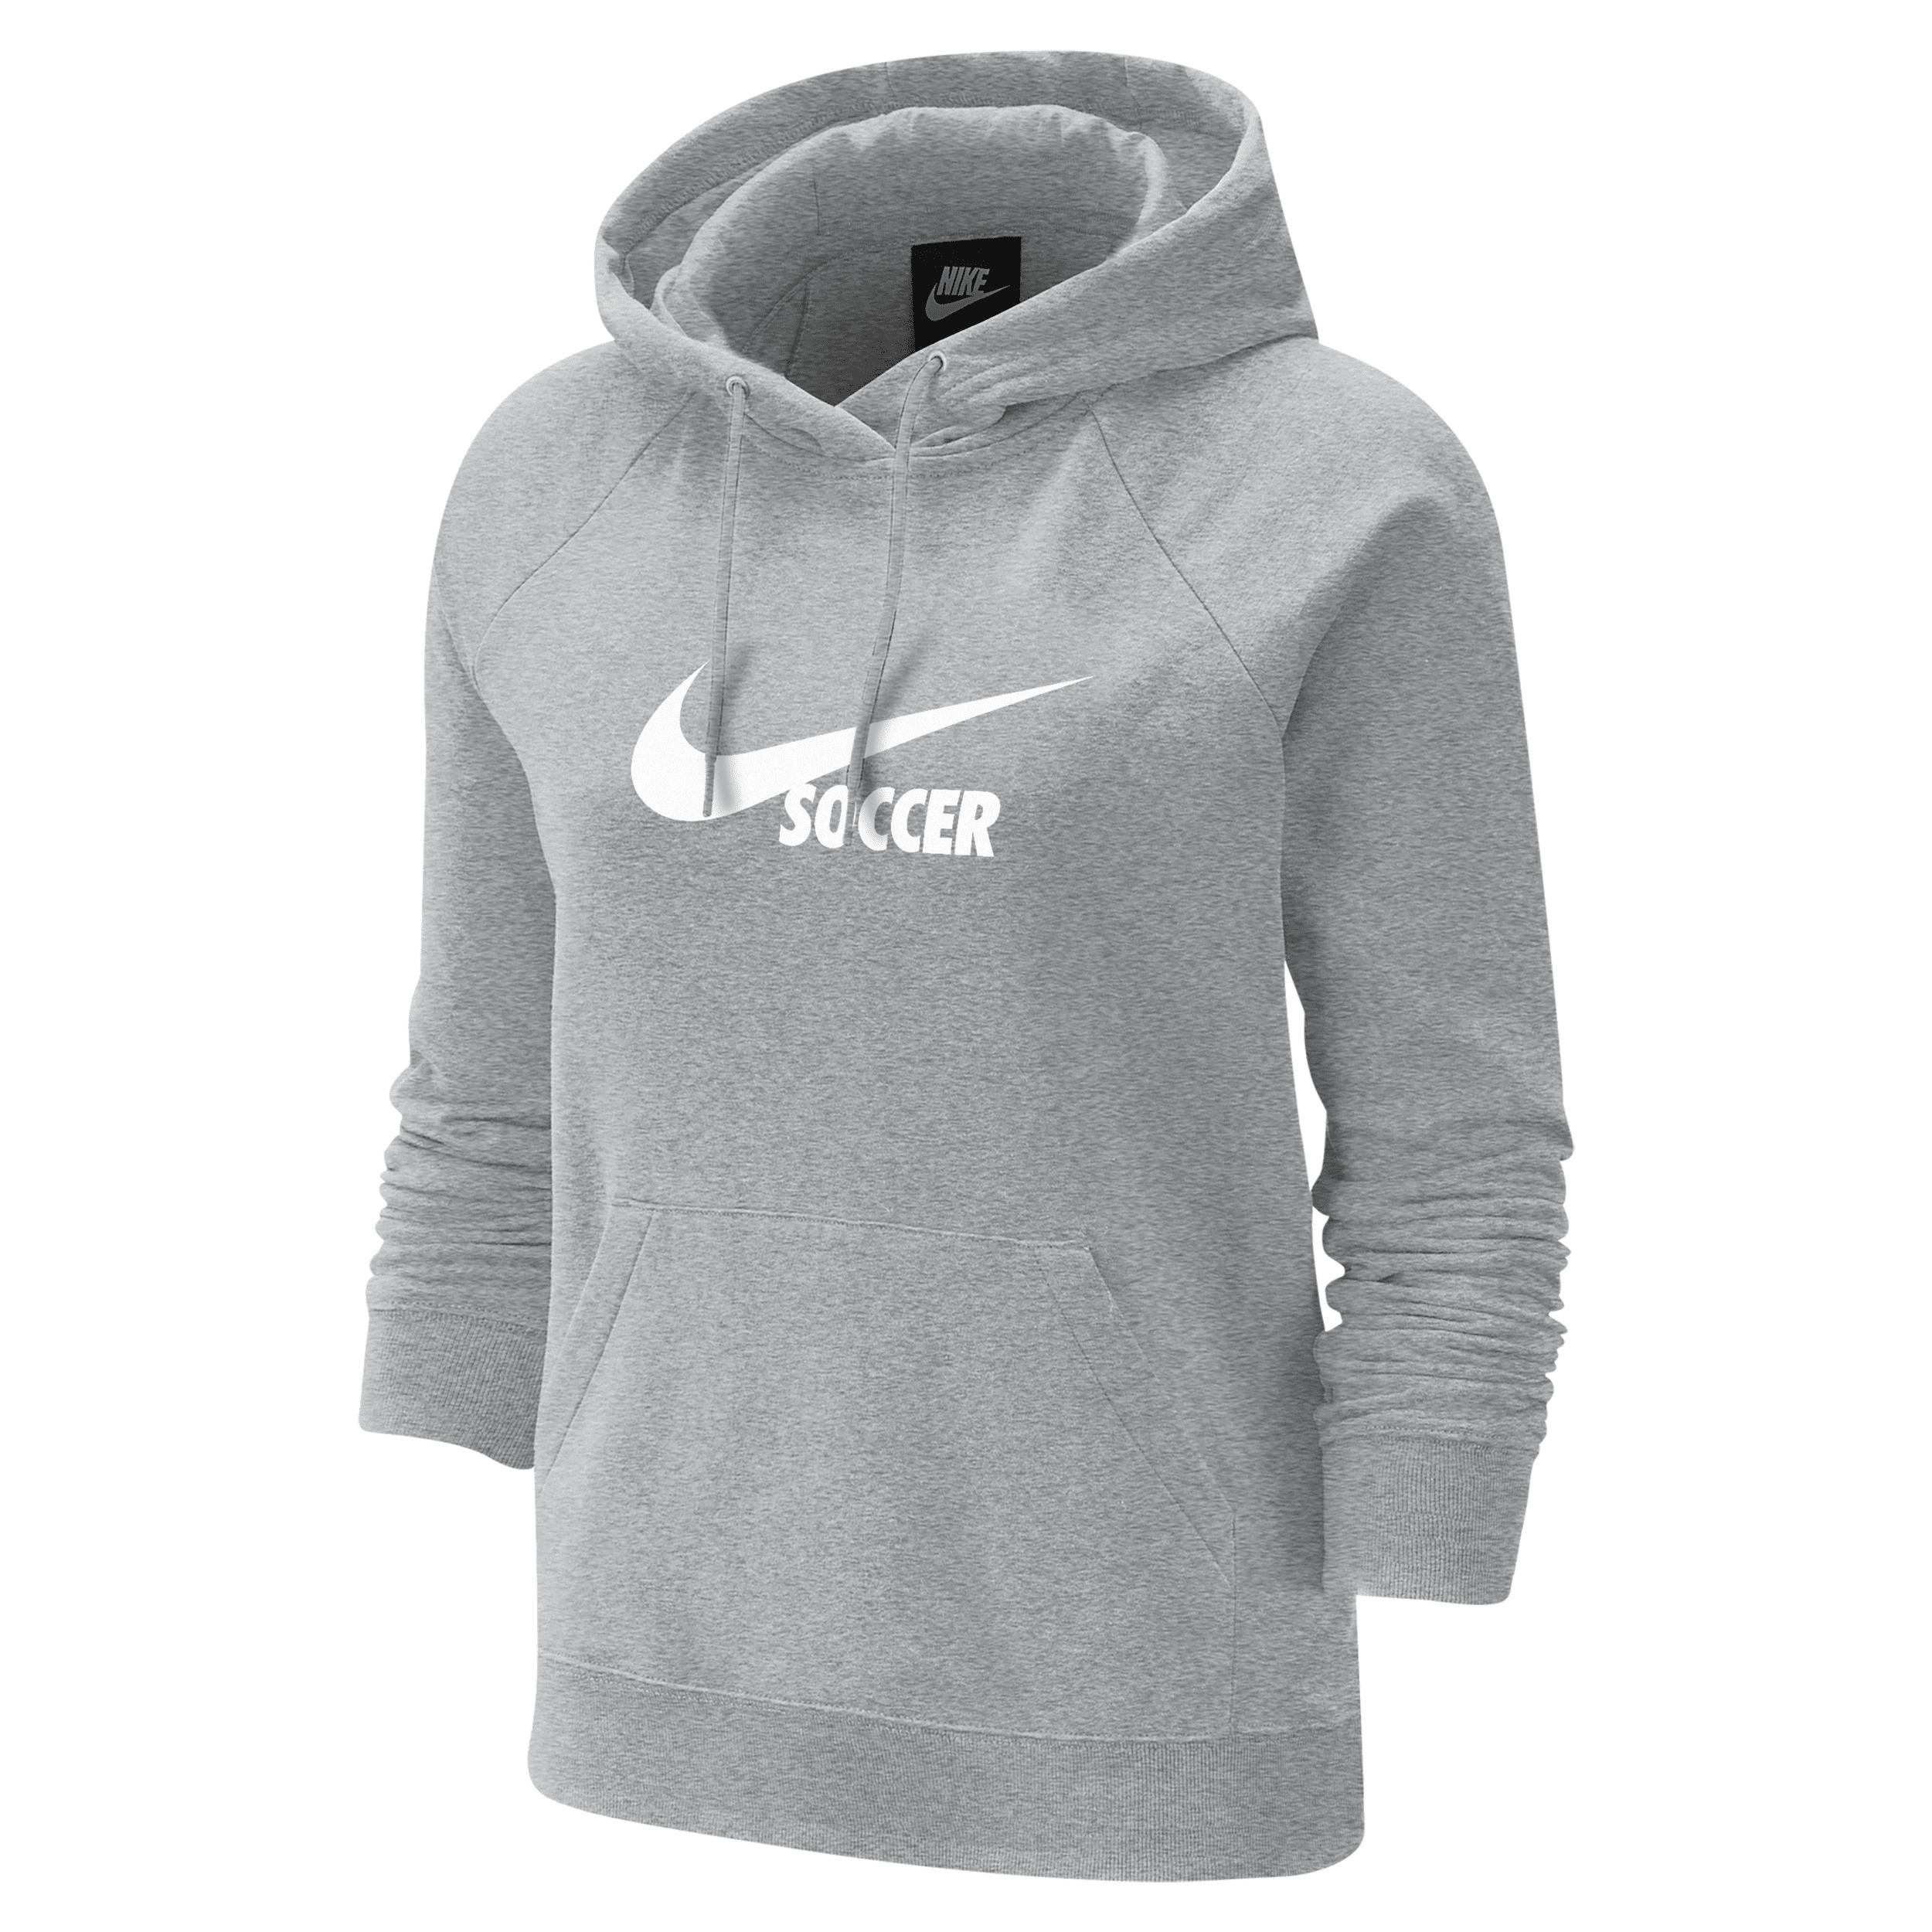 Nike Swoosh Fleece Hoodie In Grey, in Gray | Lyst